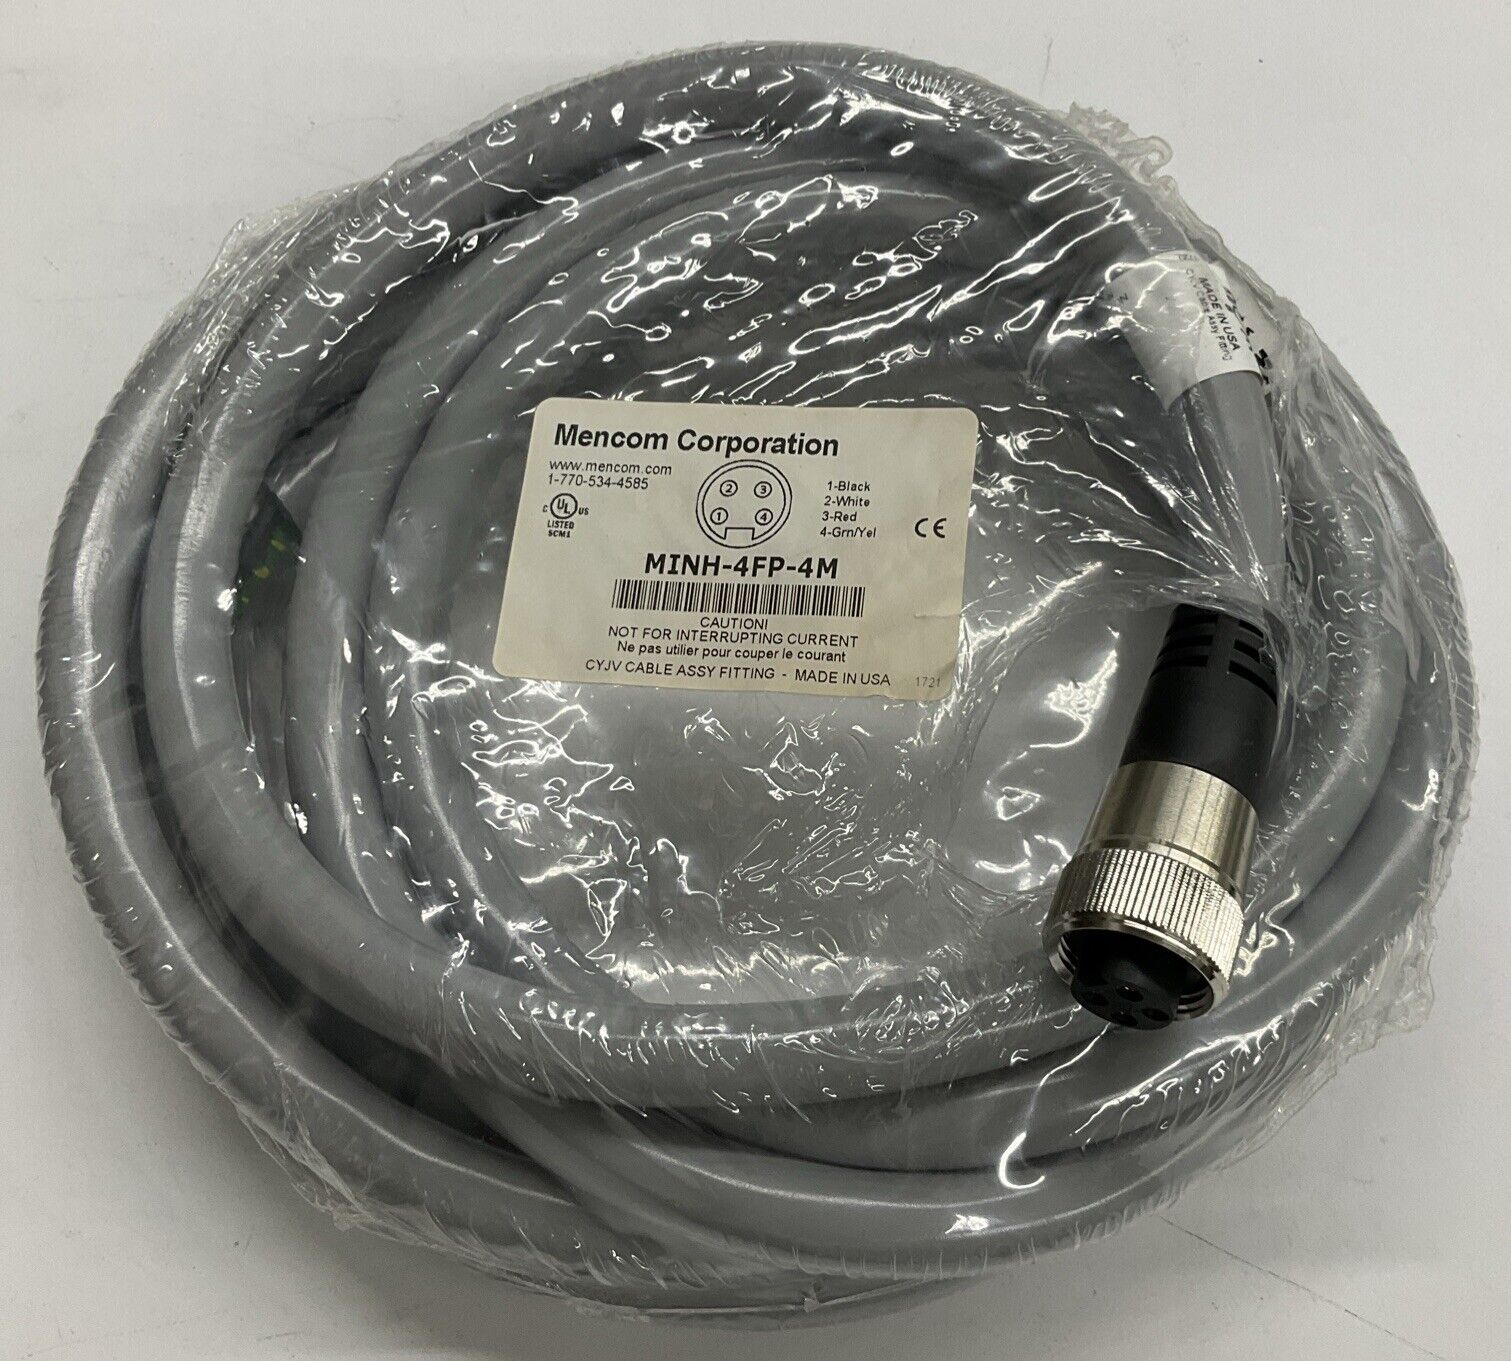 Mencom MINH-4FP-4M 7/8" Mini, Female, 4-Pole, 4-Meter Cable (CBL 117) - 0